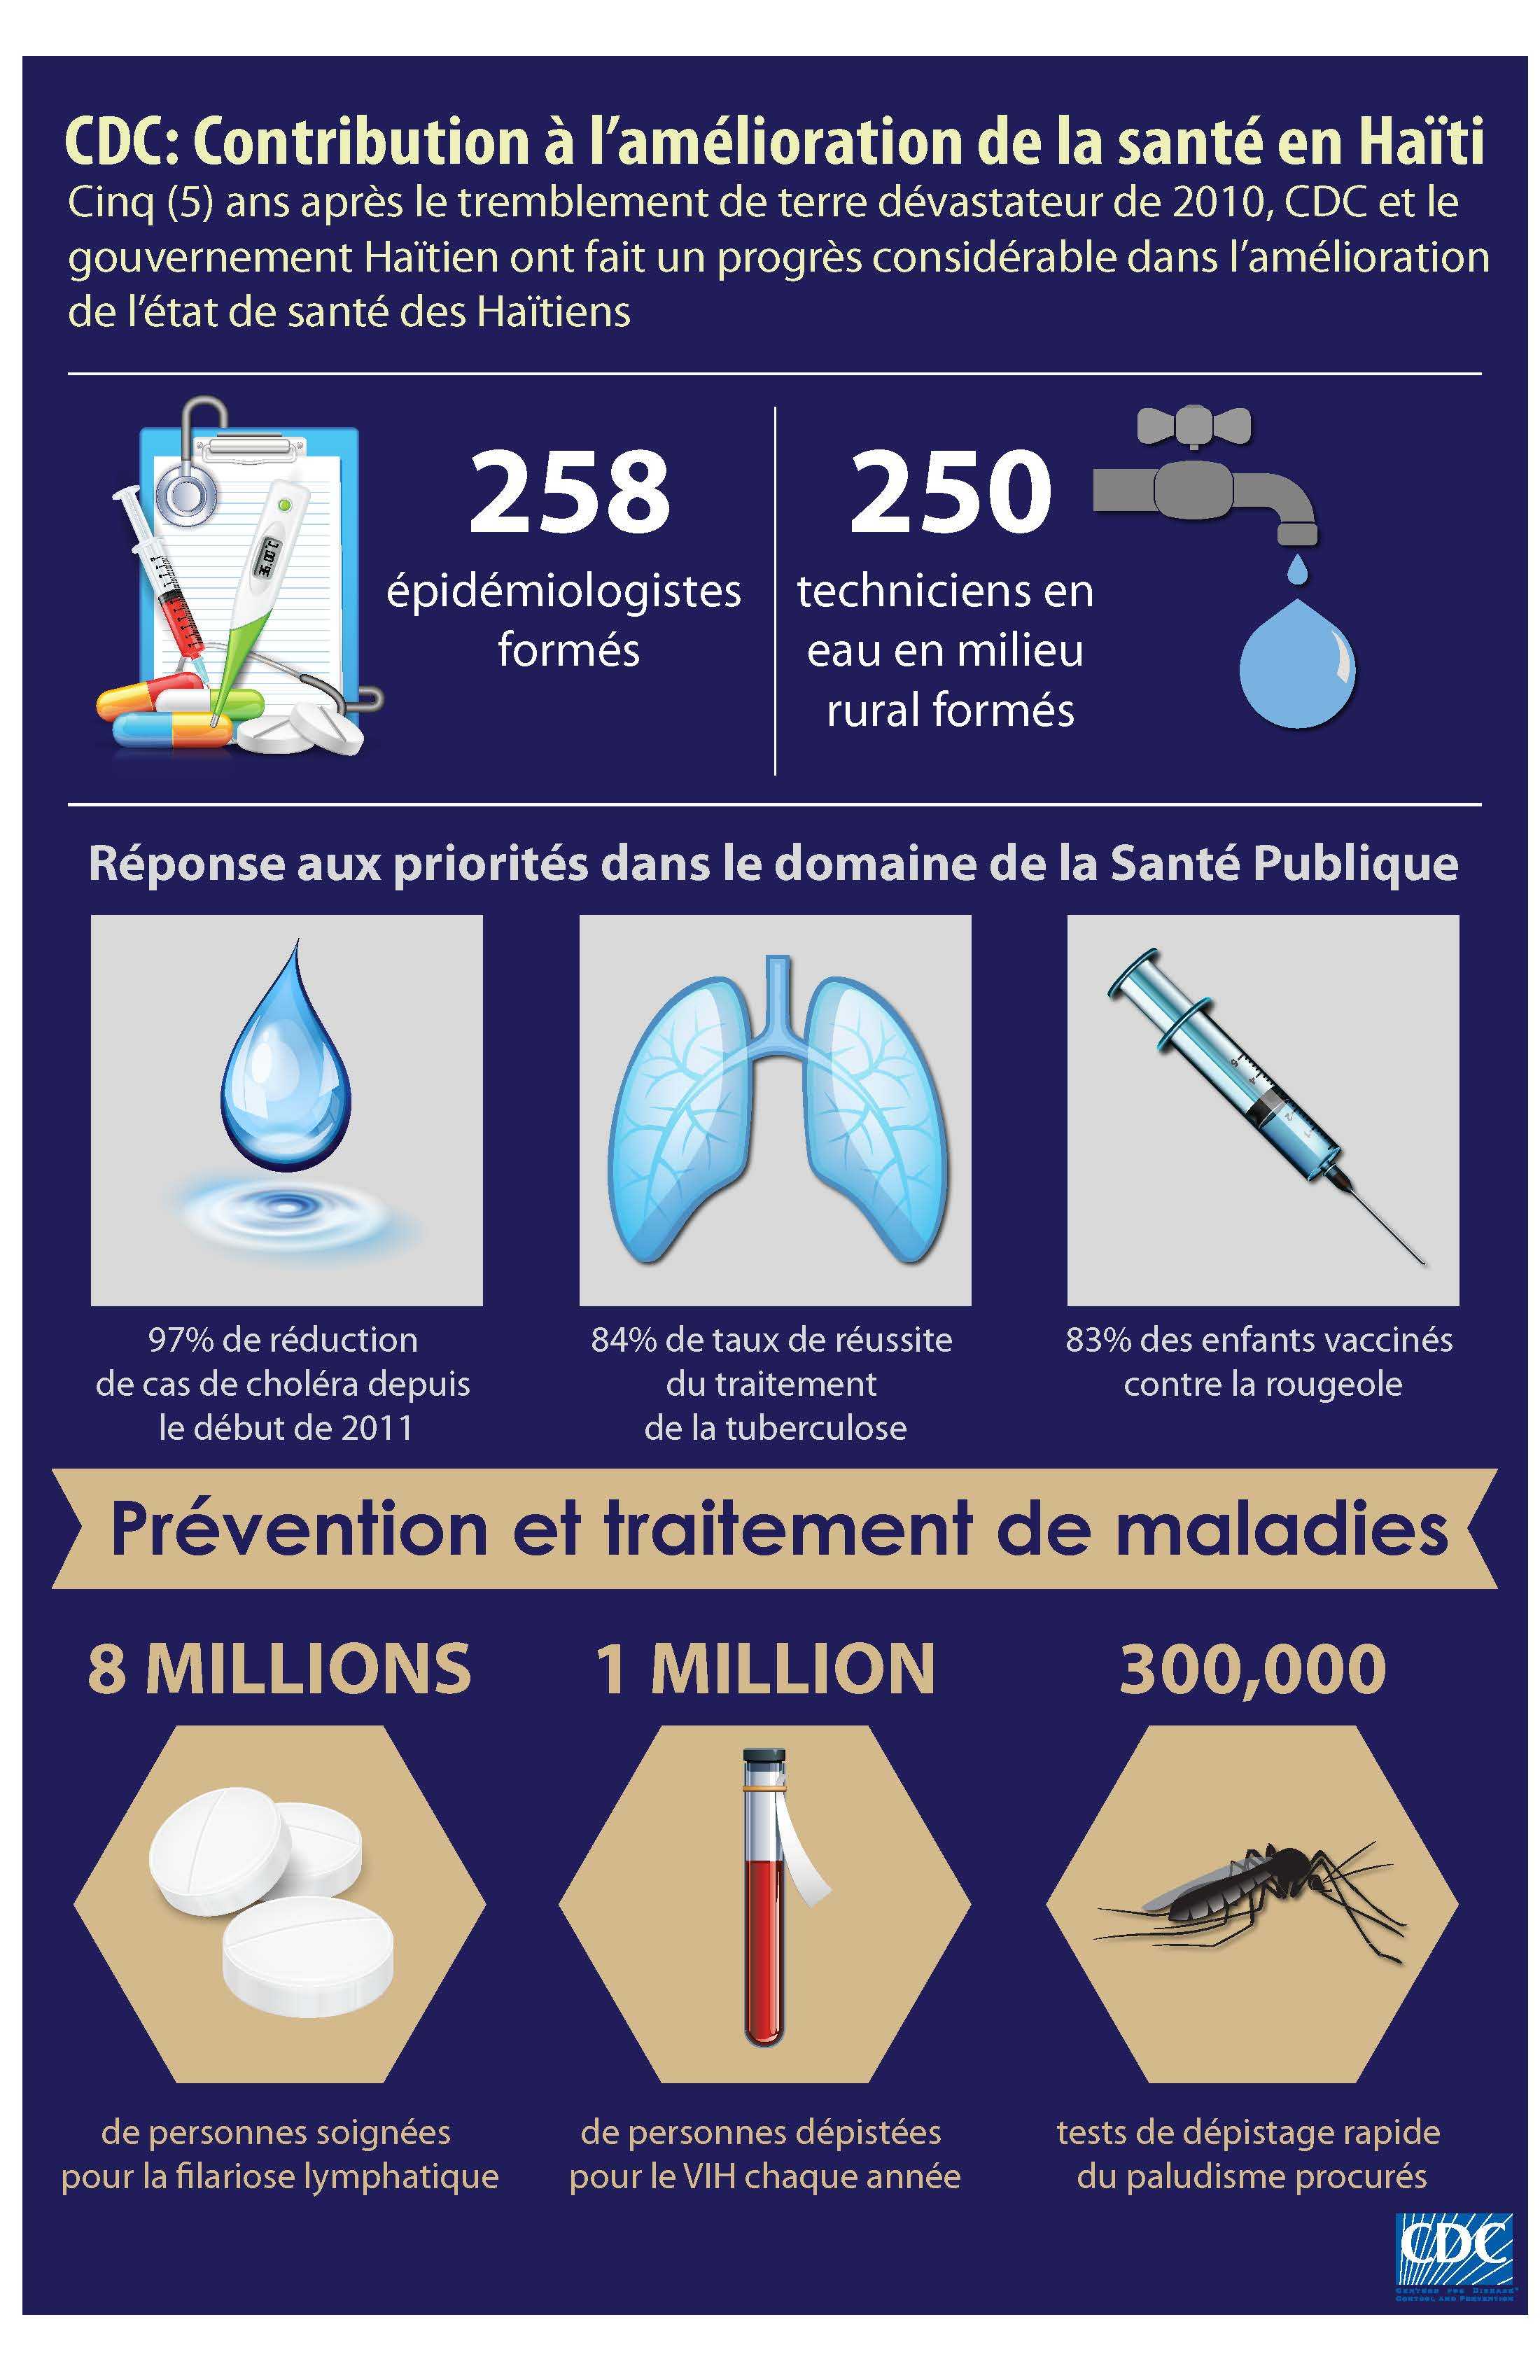 CDC: Contribution à l’amélioration de la santé en Haïti